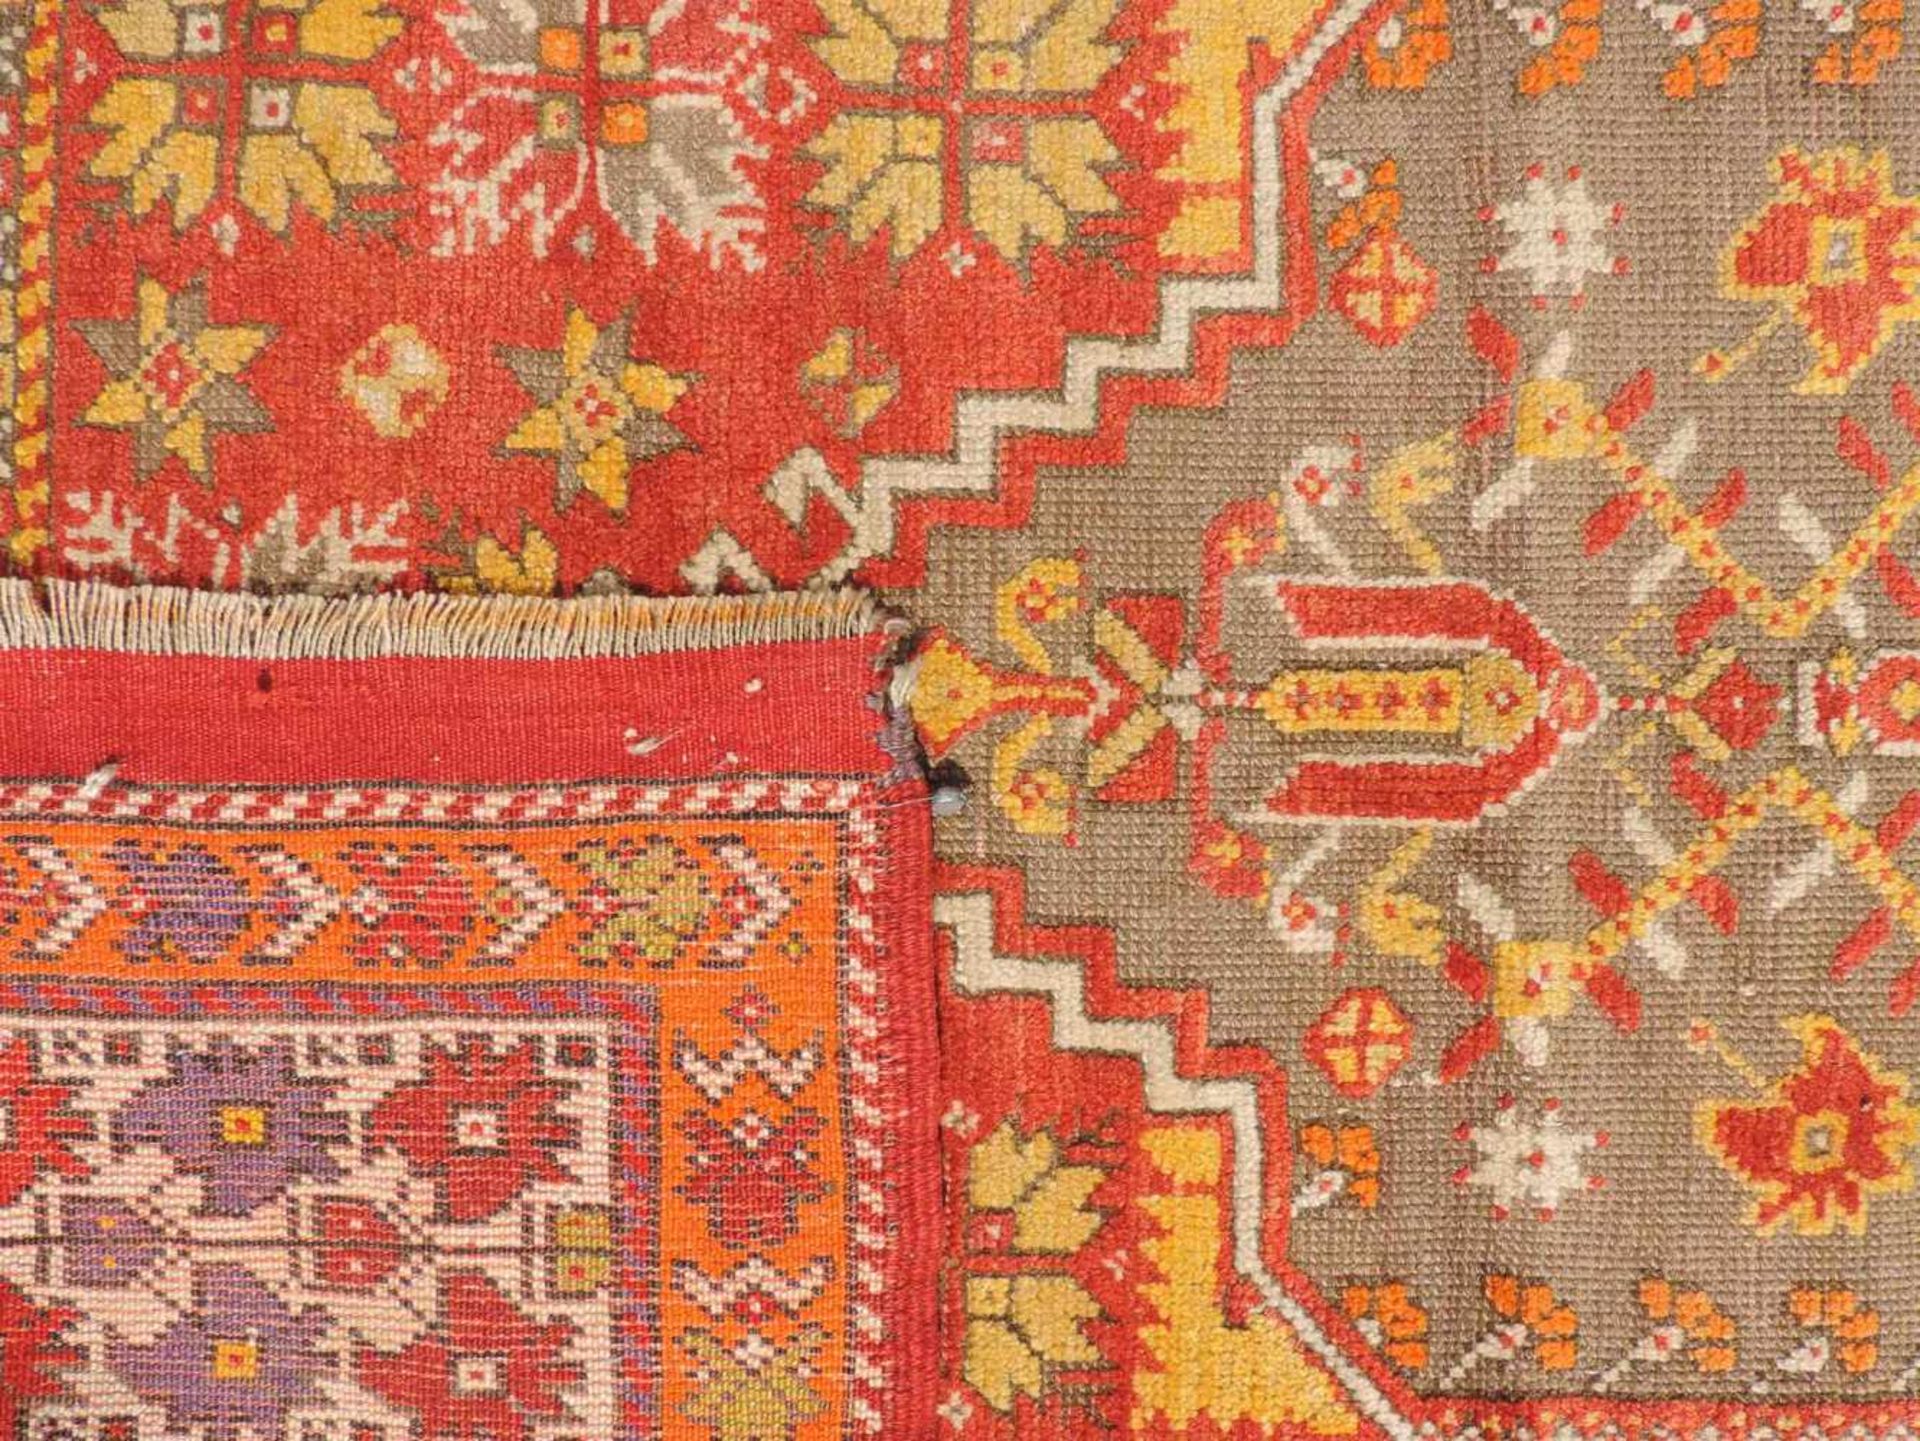 Mucur Gebetsteppich. Anatolien. Türkei. Antik, um 1870. 155 cm x 114 cm. Handgeknüpft. Wolle auf - Bild 5 aus 6